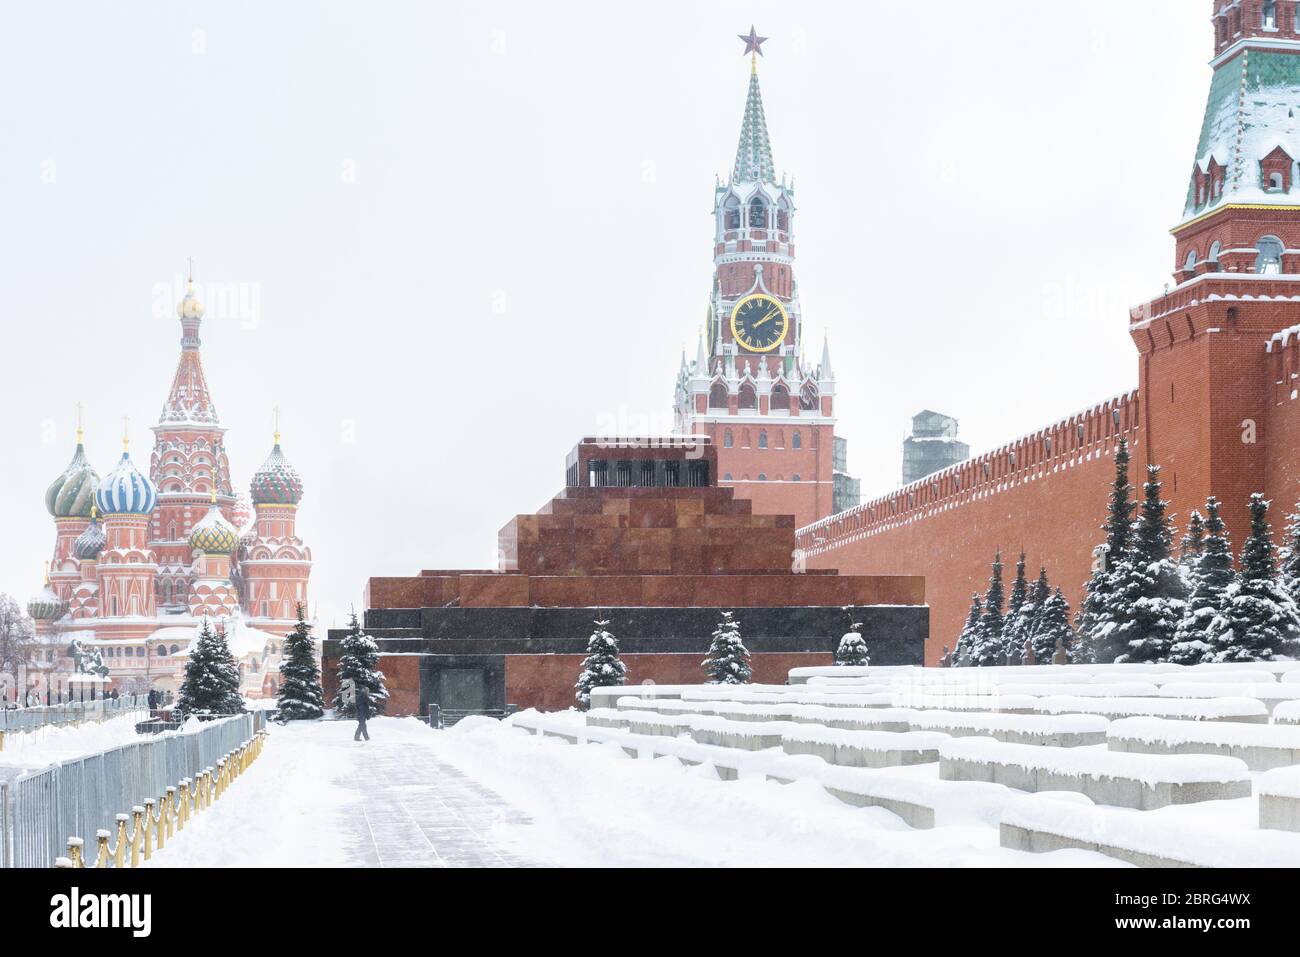 Place Rouge en hiver, Moscou, Russie. La place Rouge est la principale attraction touristique de Moscou. Hiver enneigé en Russie. Moscou Kremlin pendant la neige. Son Banque D'Images